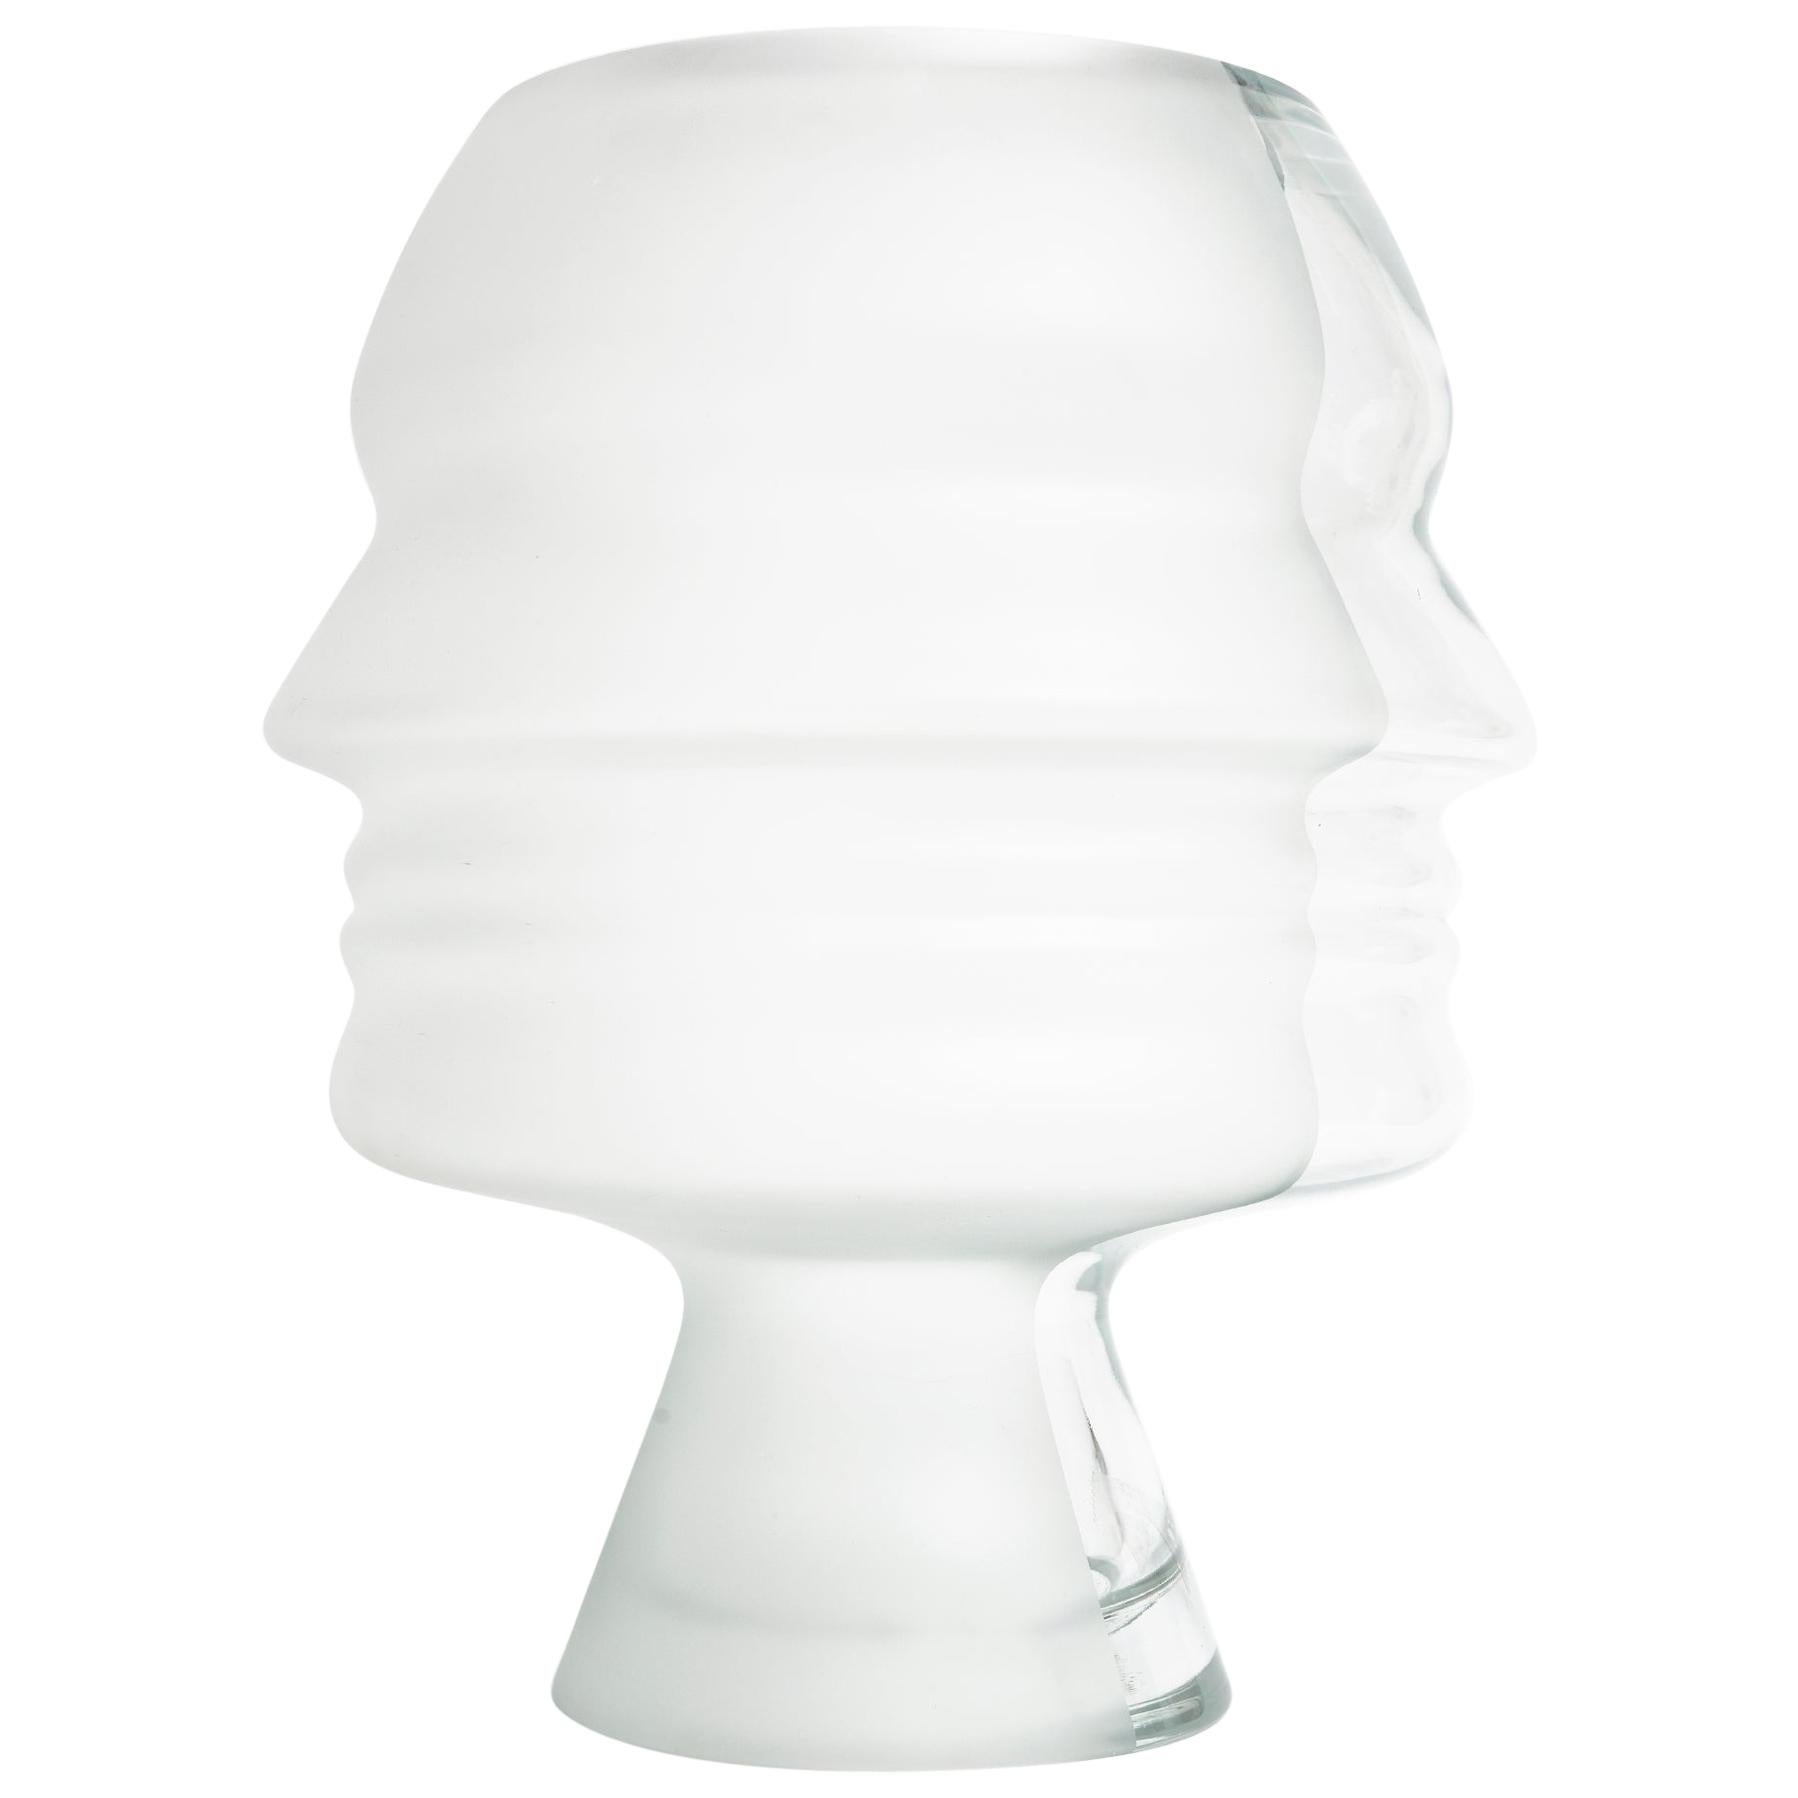 Vase en verre "Ego" par Karim Rashid inspiré par le profil sculpté de Mussolini